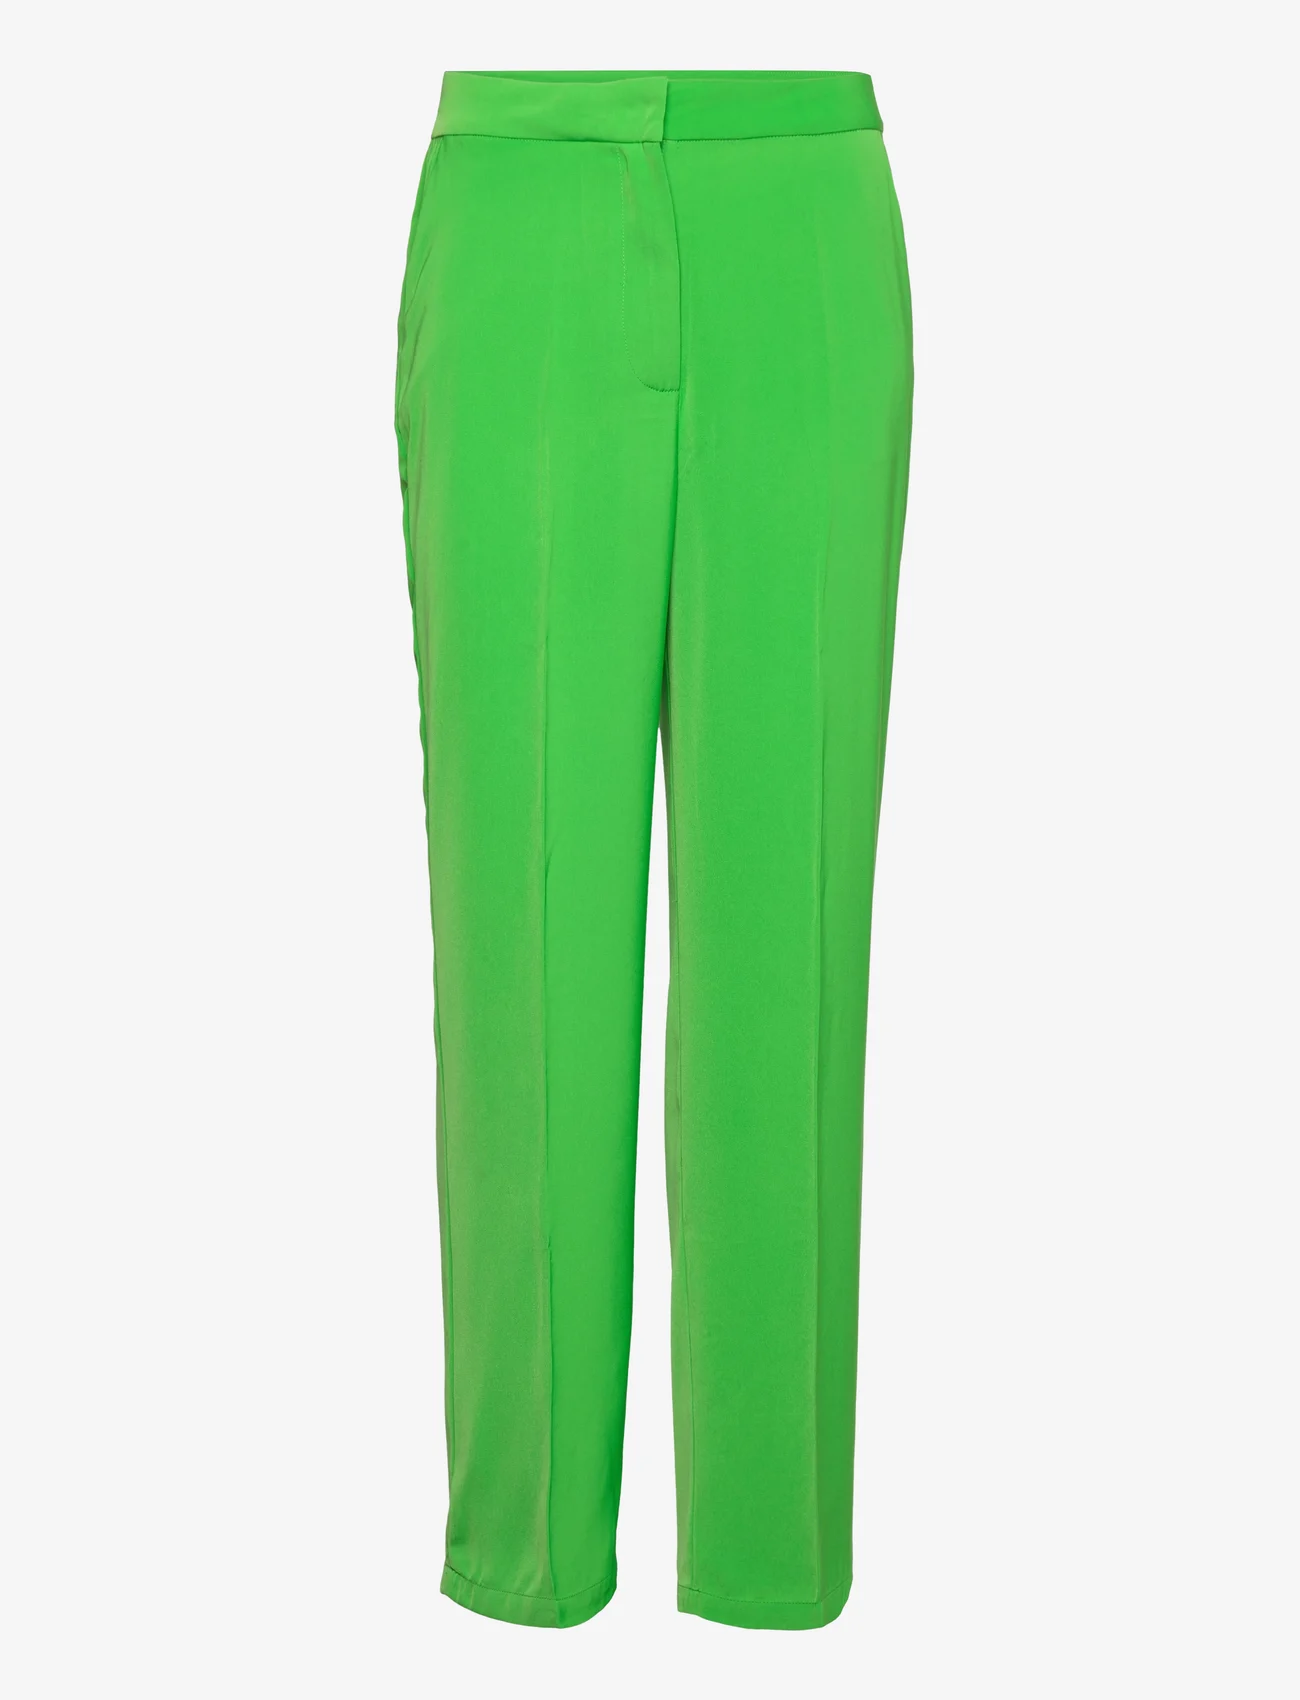 A-View - Annali pant - broeken met rechte pijp - green - 0